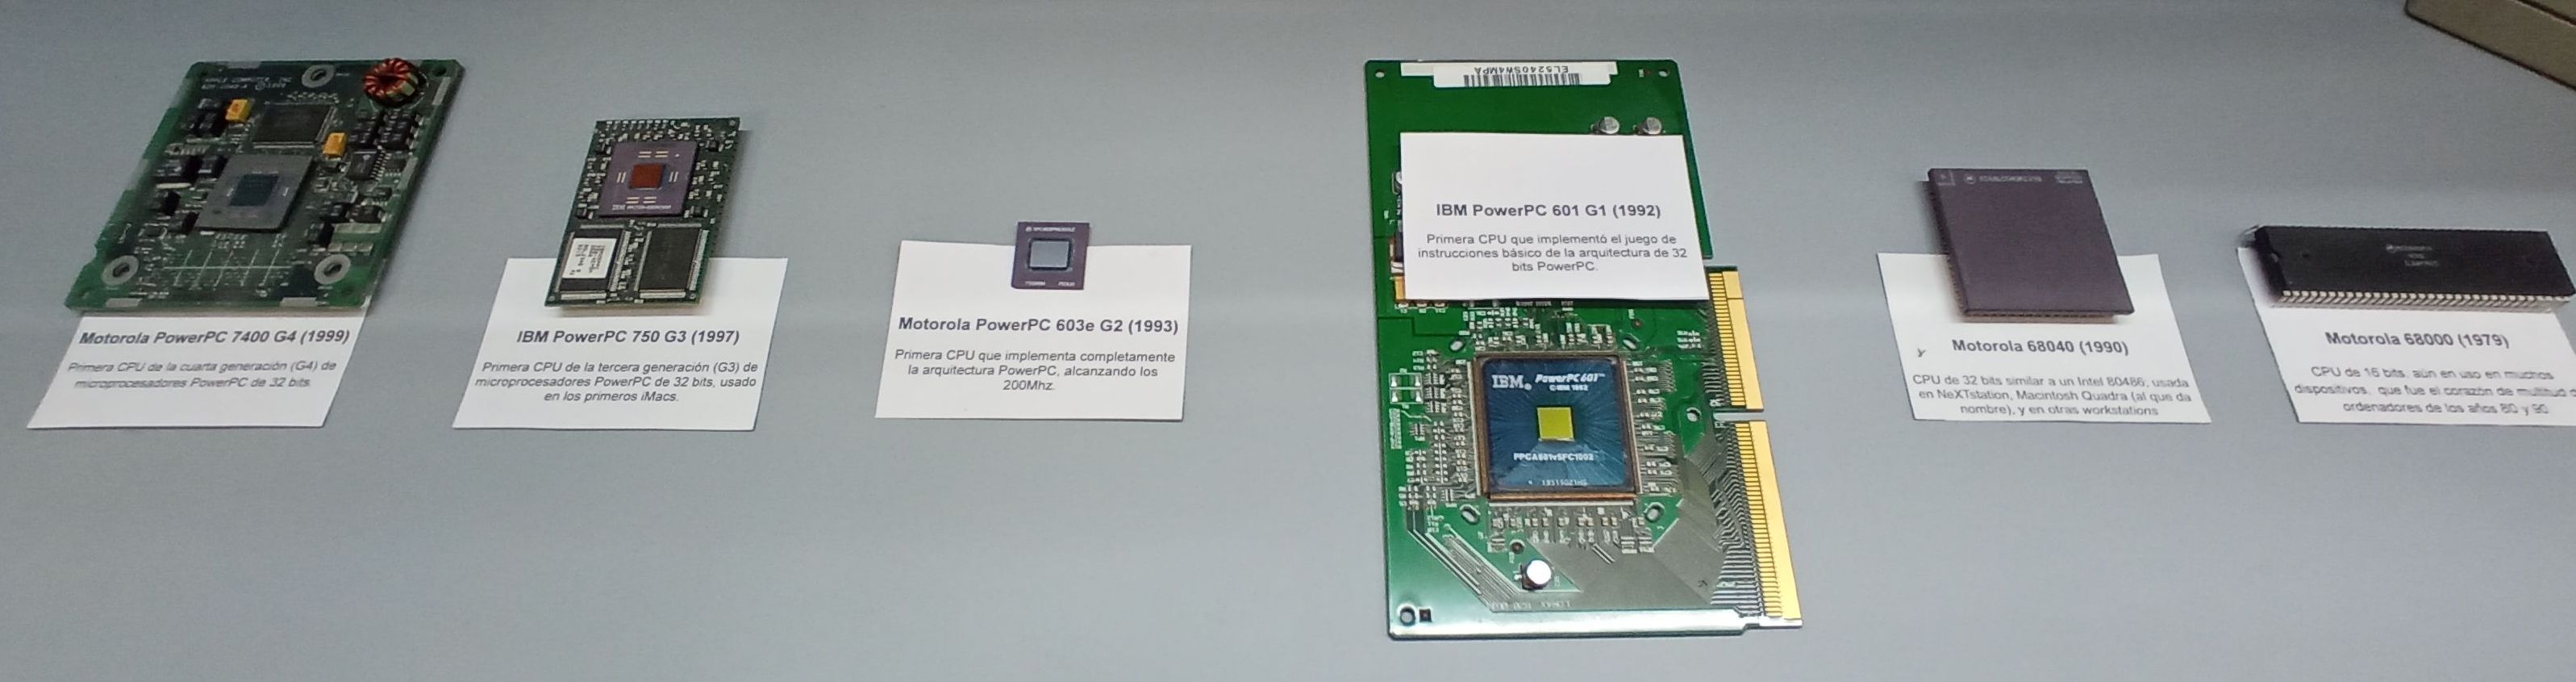 Microprocesadores usados por Apple en sus primeros 20 años